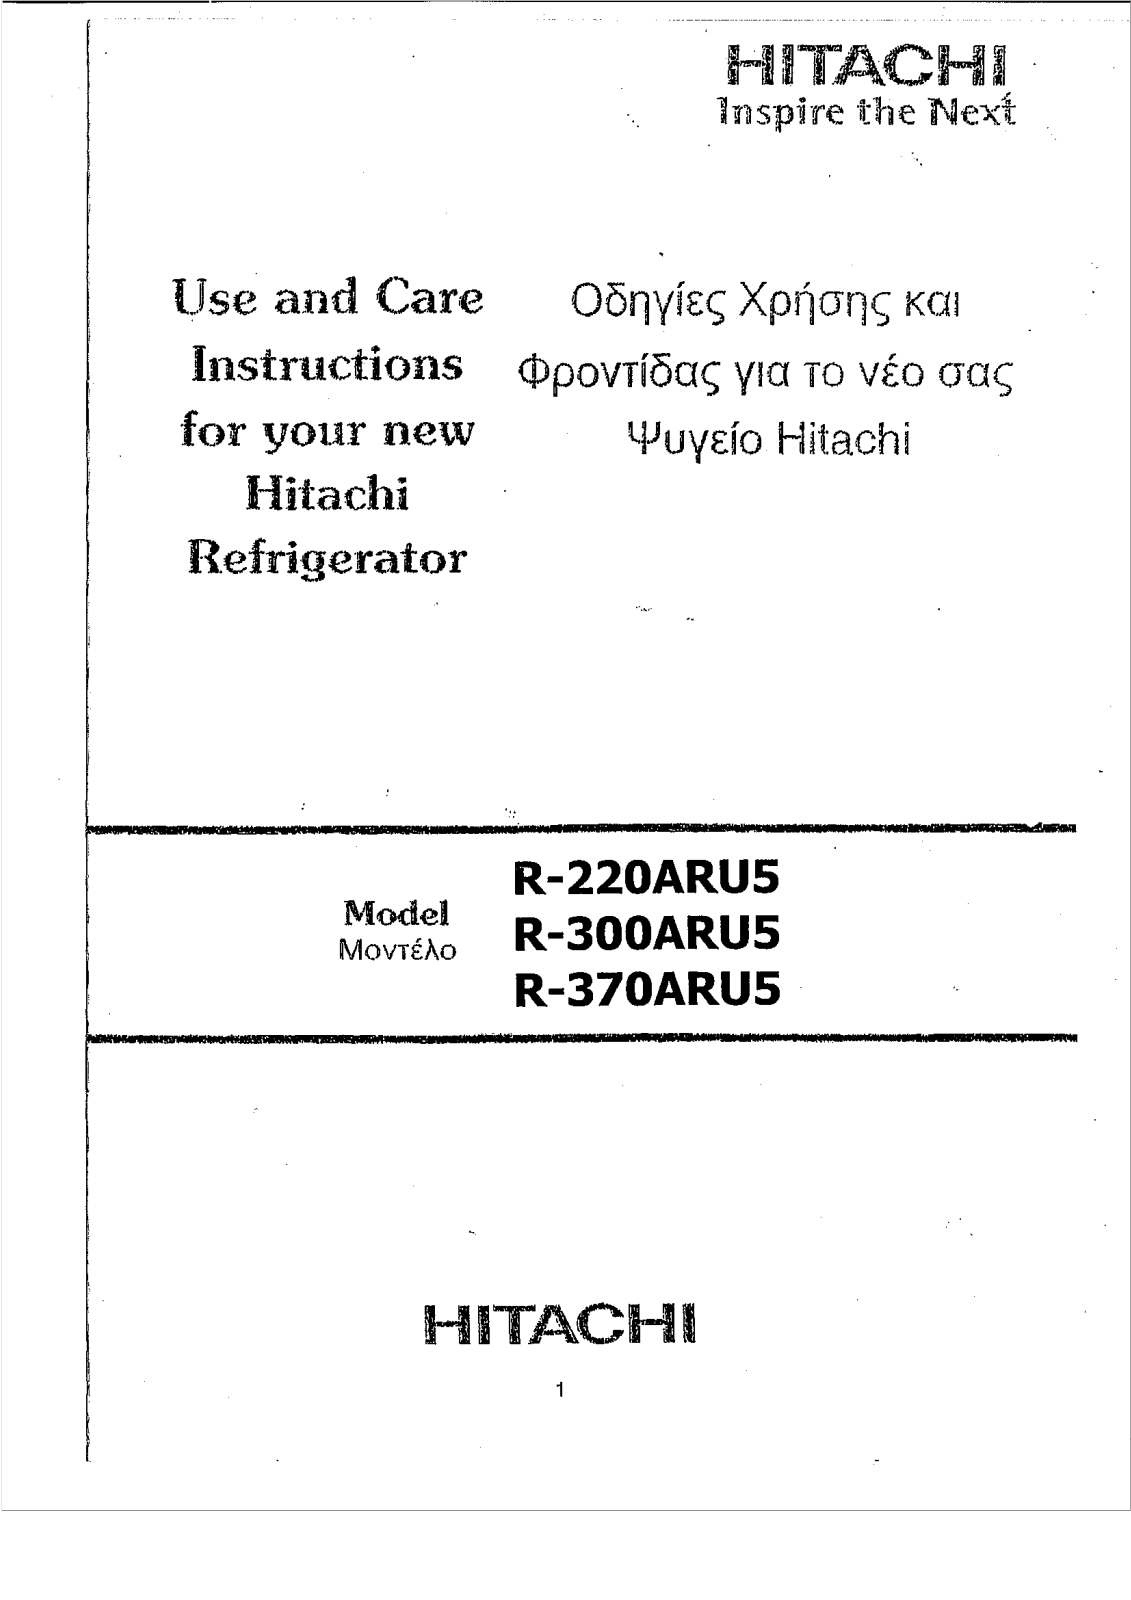 Hitachi R-220ARU5, R-370ARU5, R-300ARU5 Manual